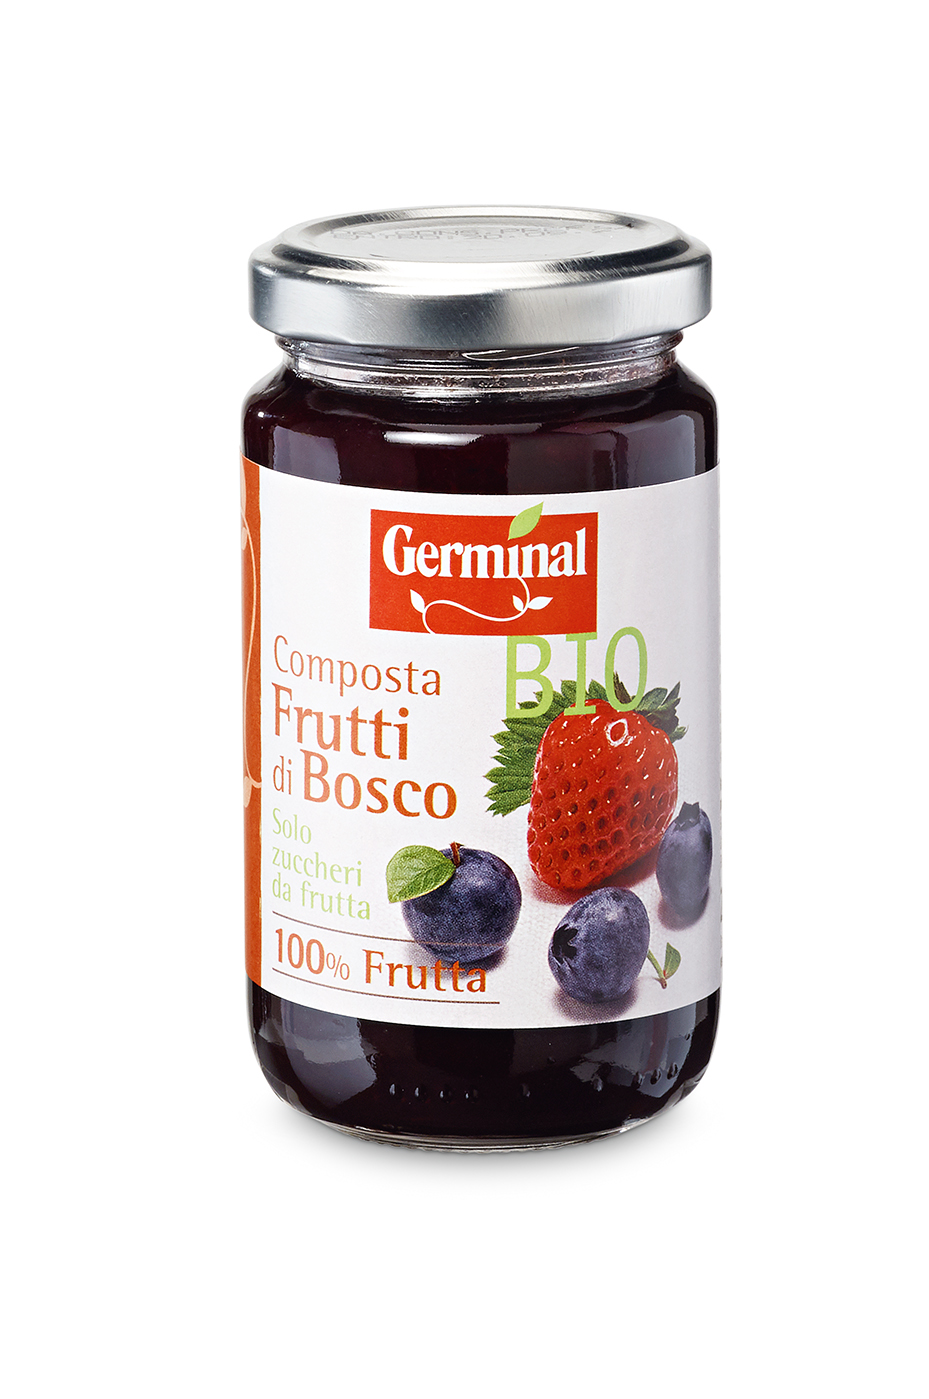 Immagine confezione Composta Frutti di bosco Germinal Bio